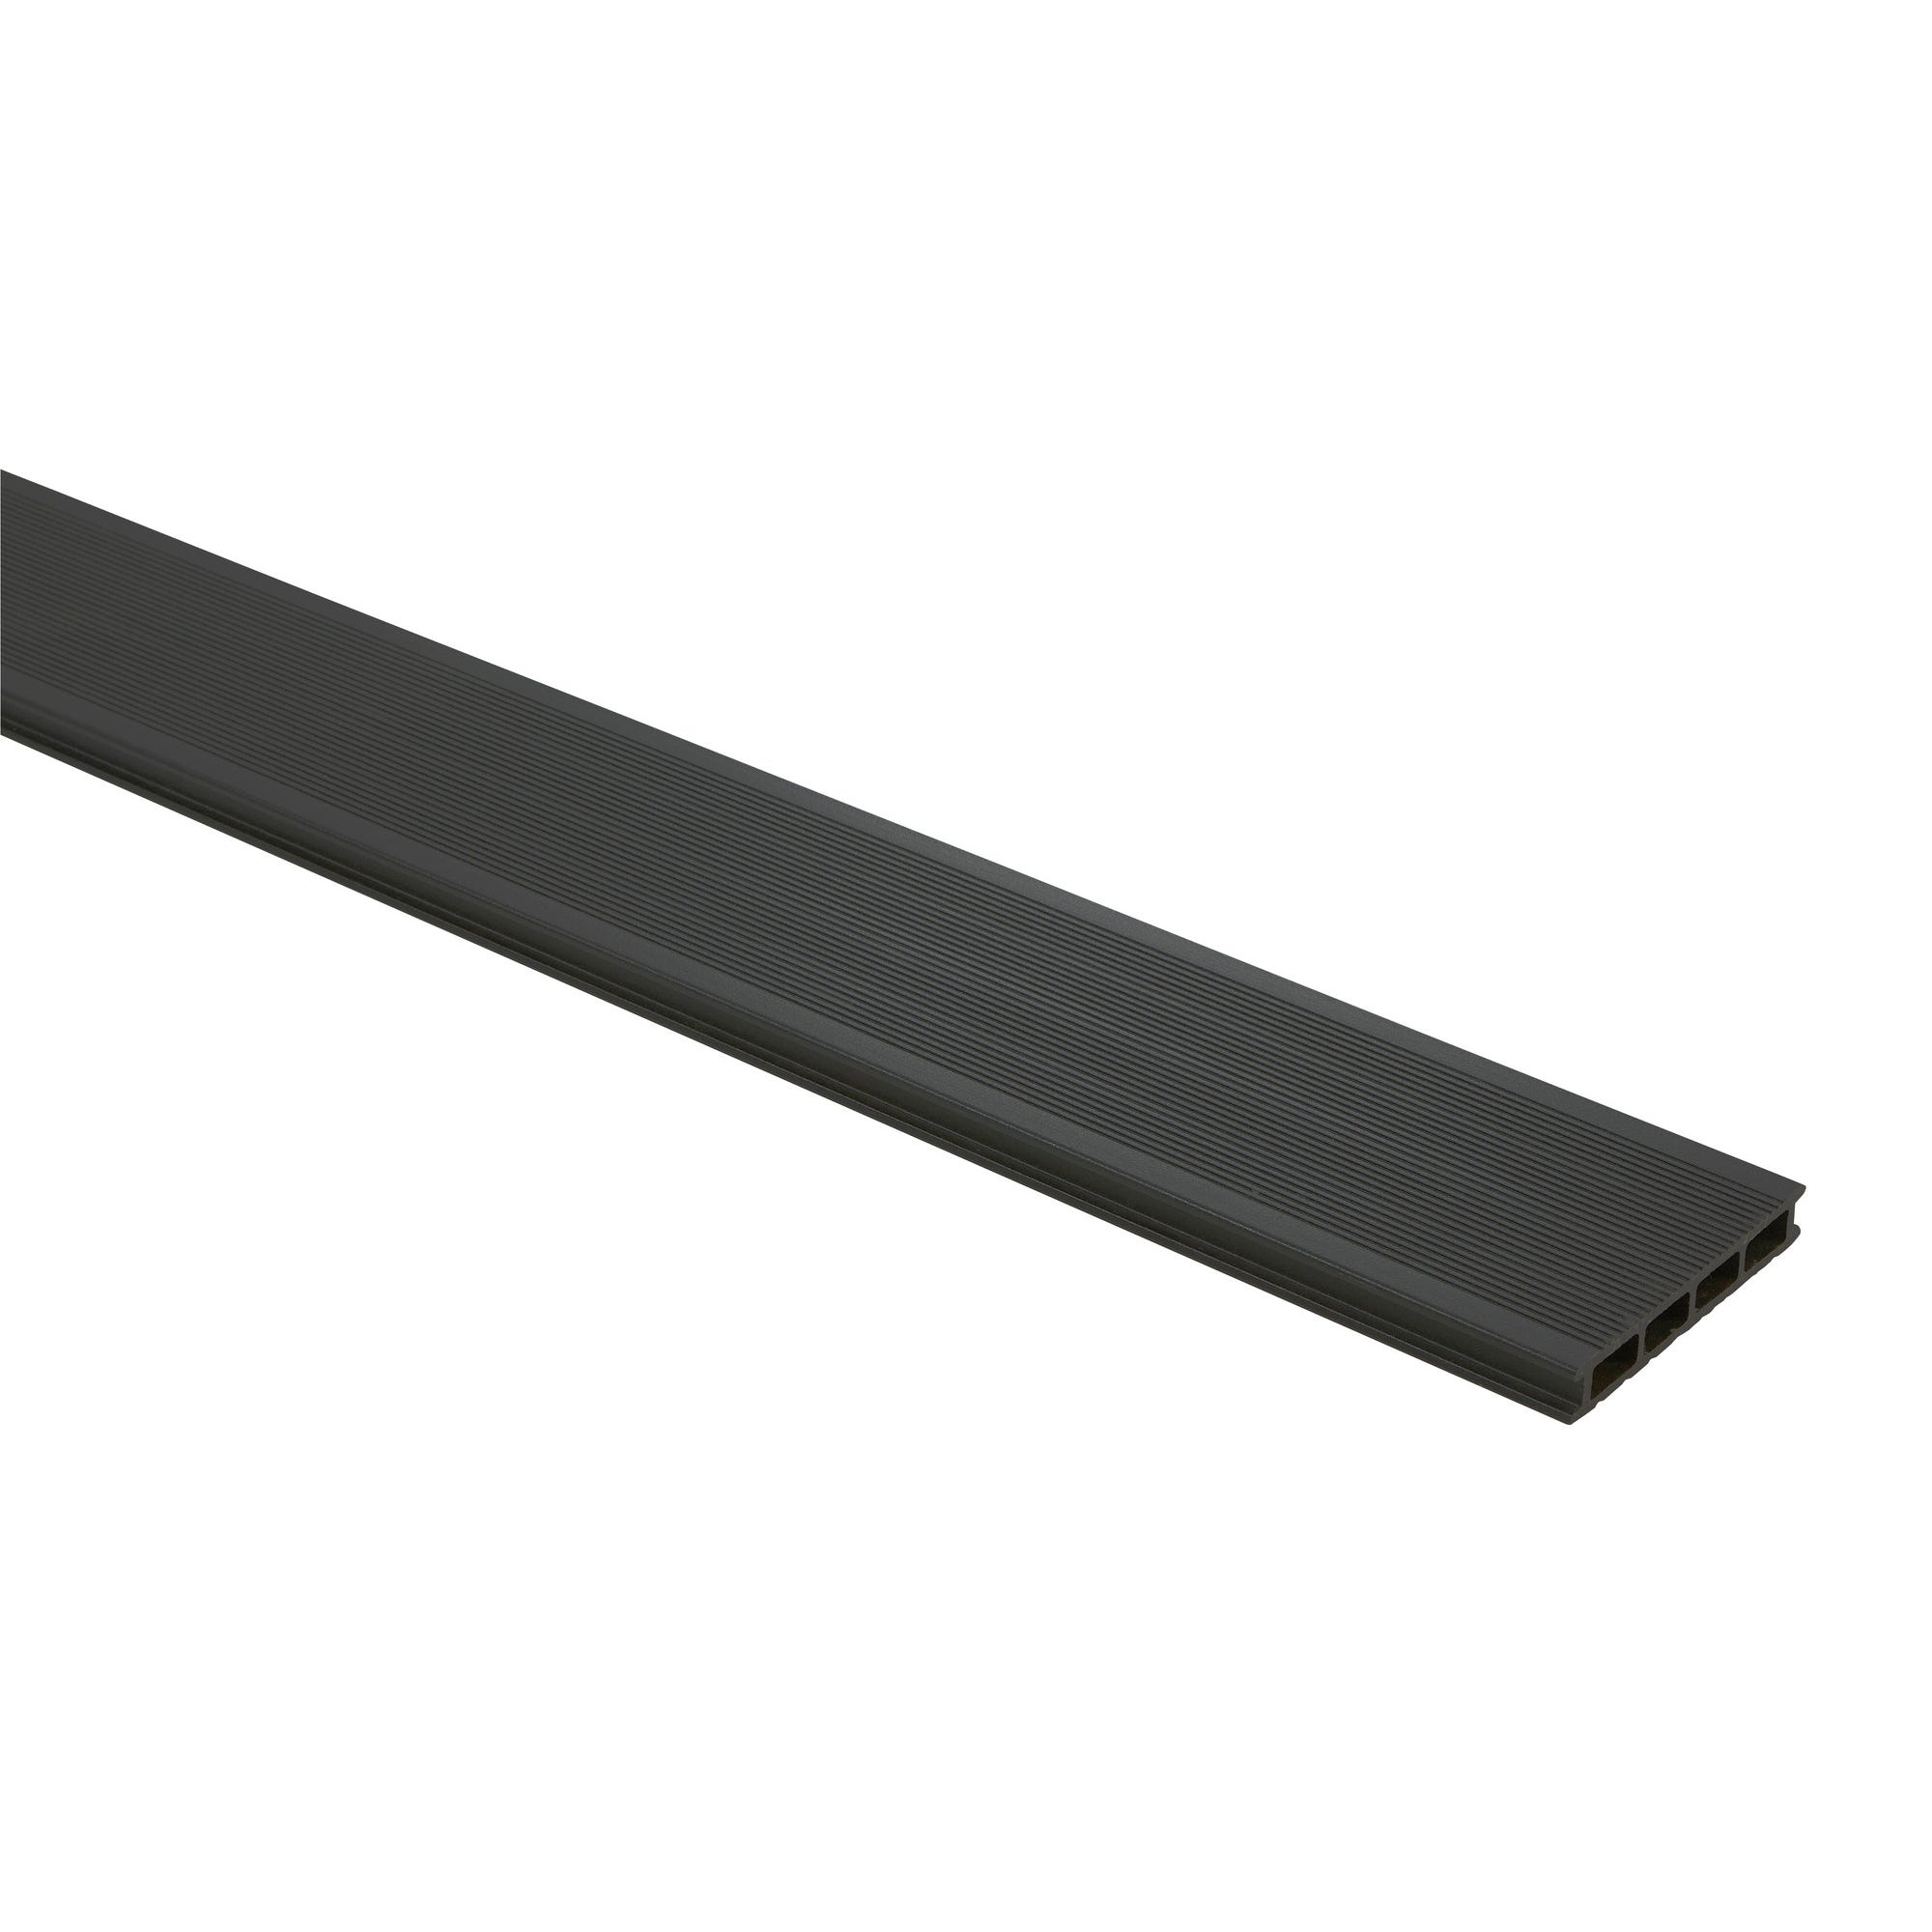 Lame de terrasse composite noire 21 x 138 mm Long. 2,4 m 2